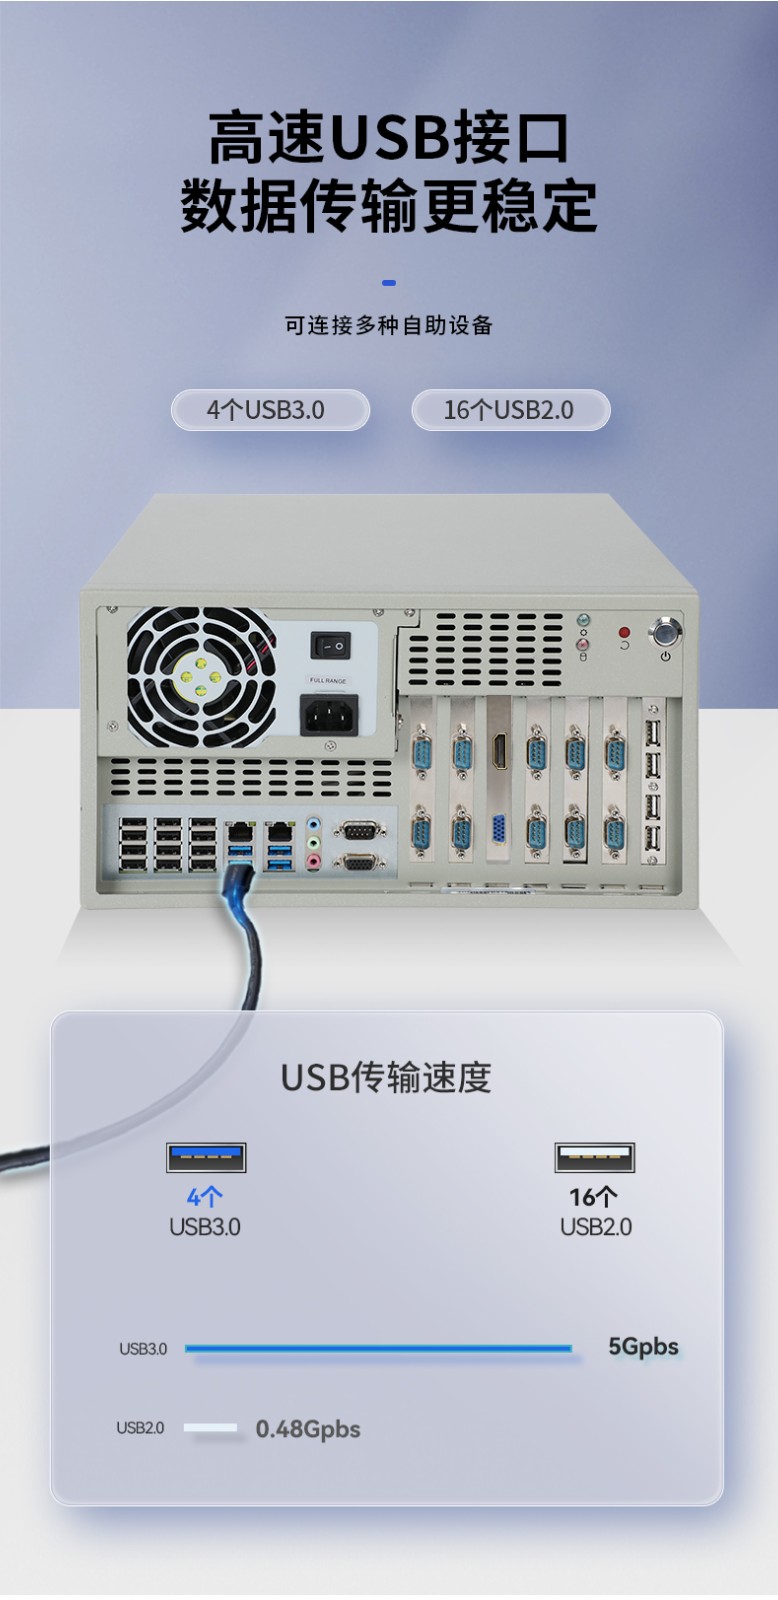 国产壁挂式主机,支持统信uos系统,DT-5304A-SD2000MB.jpg